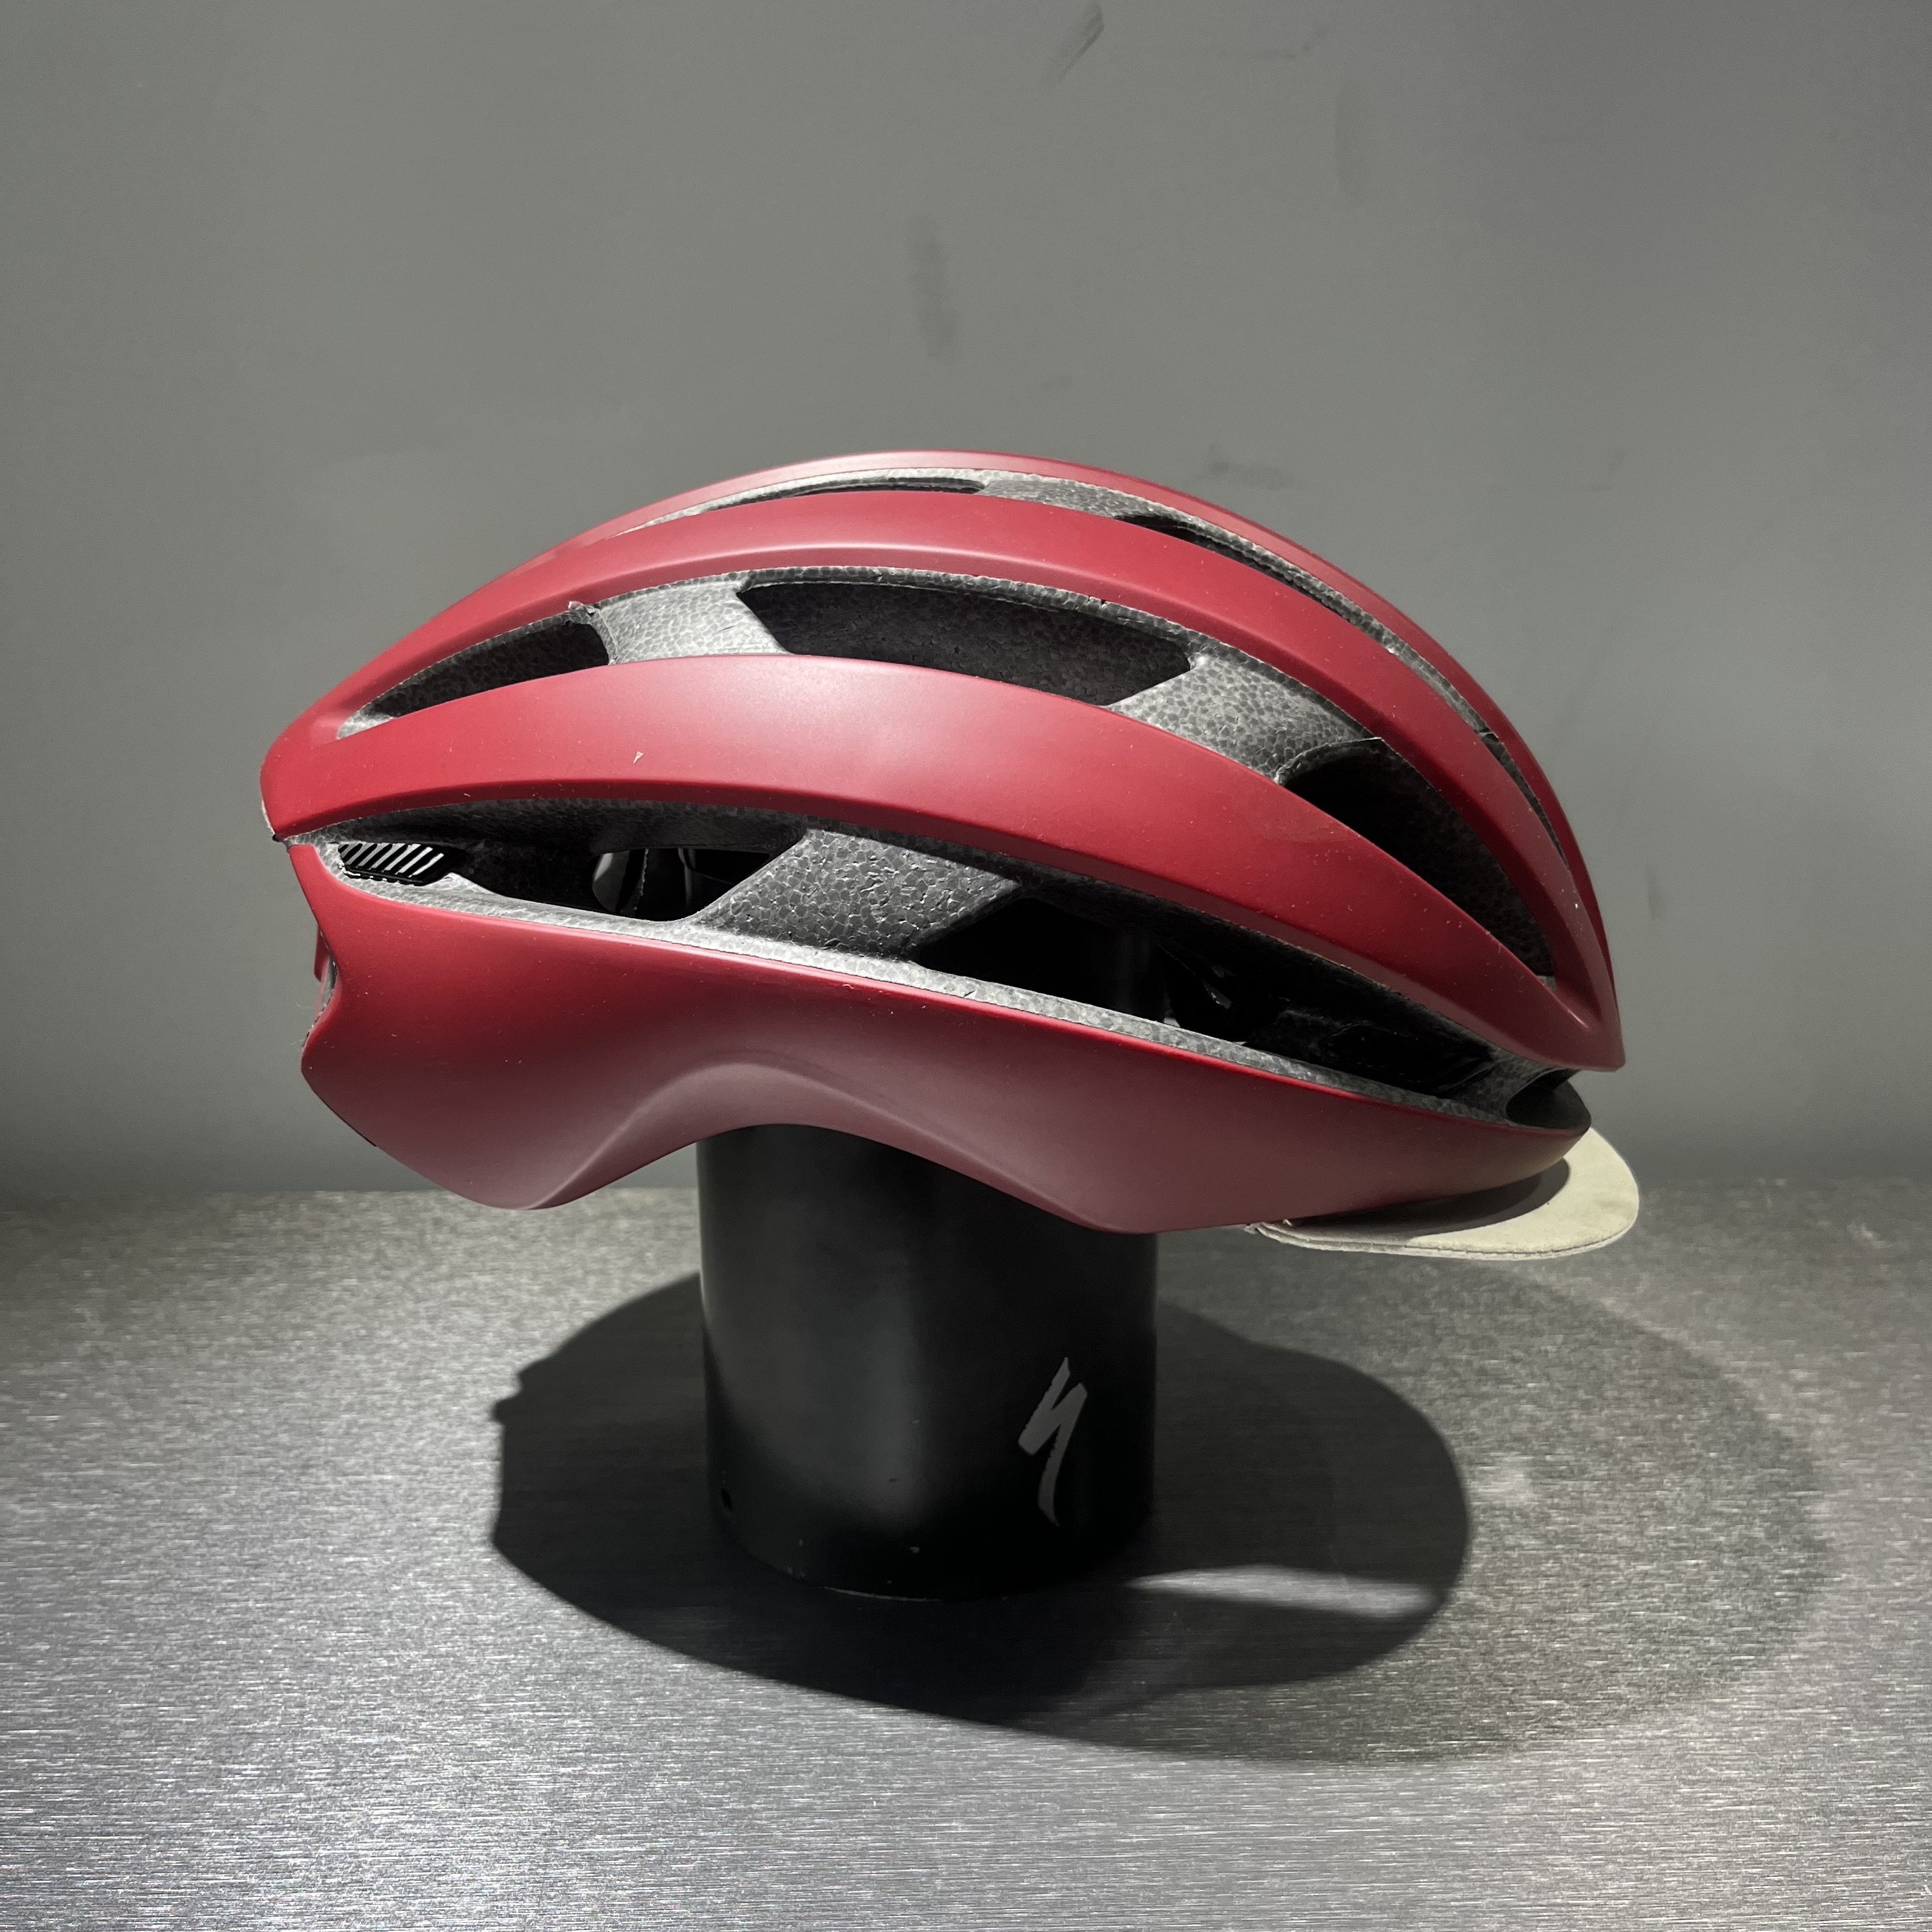 자체브랜드 스페셜라이즈드 연식할인 자전거 헬멧 판매 모음전 (에스웍스 프리베일, 에어넷, 프로페로)